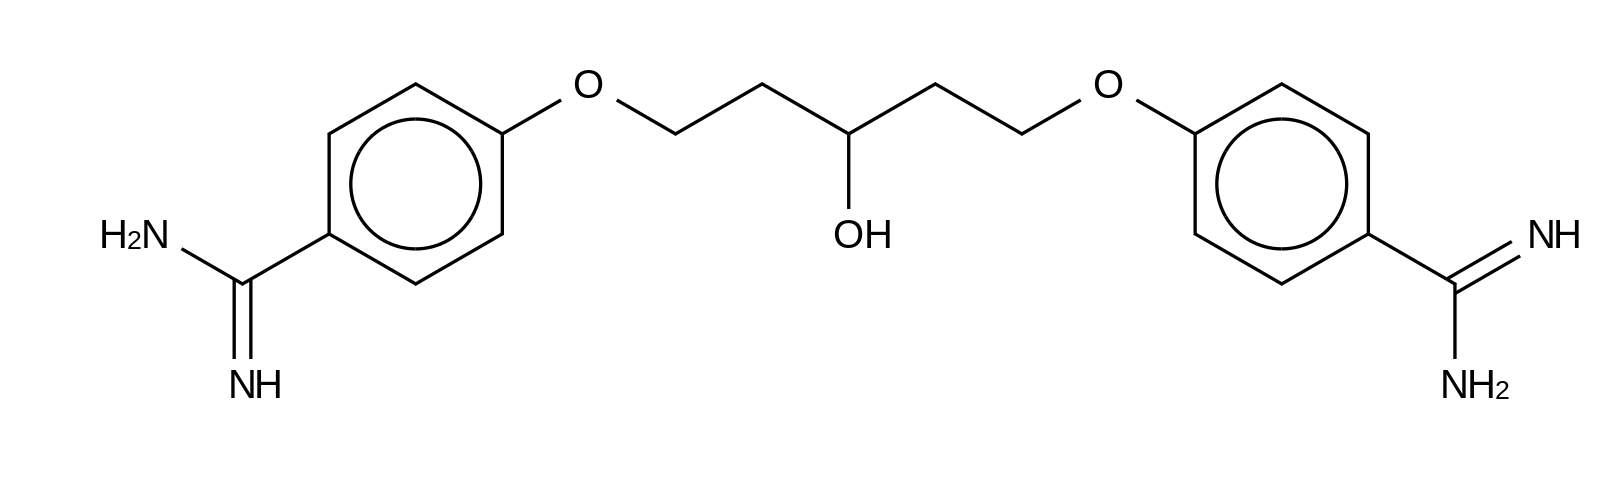 1,5-Bis(4-amidinophenoxy)-2-pentanol